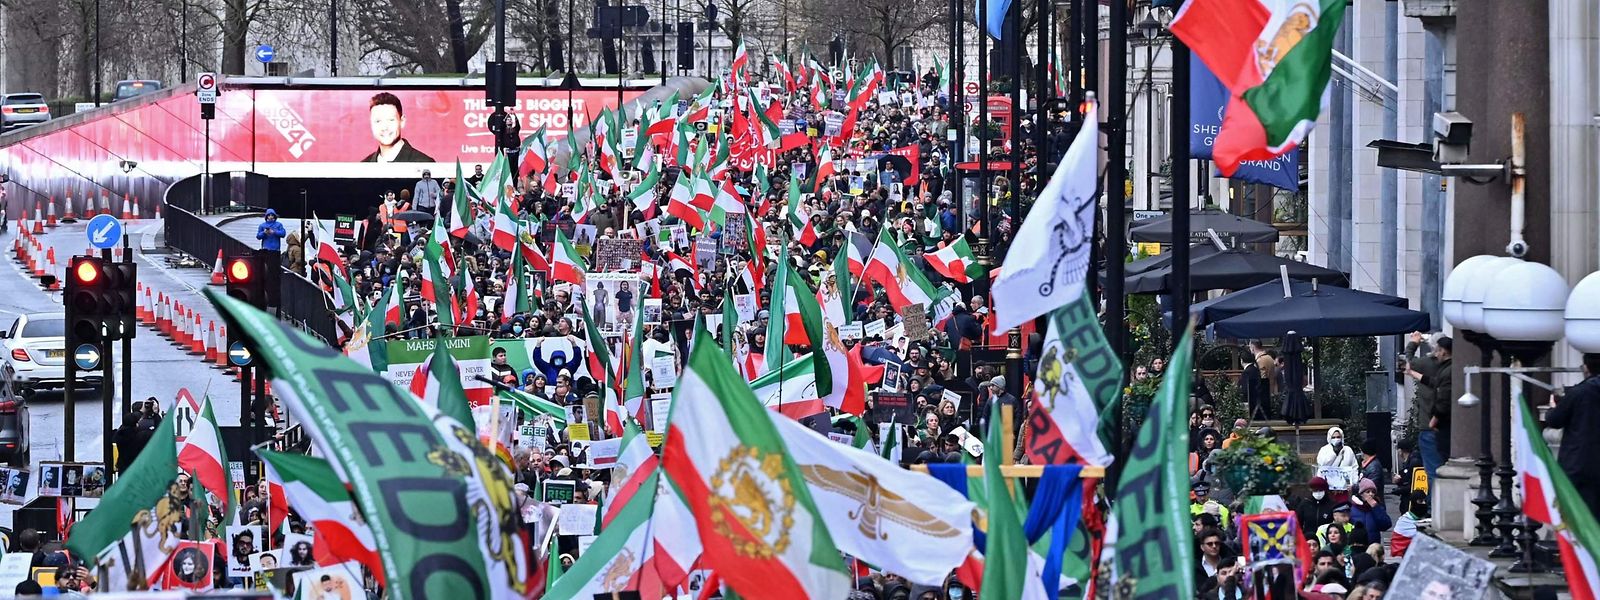 Weltweit gibt es Proteste gegen das Regime im Iran, unter anderem am Sonntag in London.